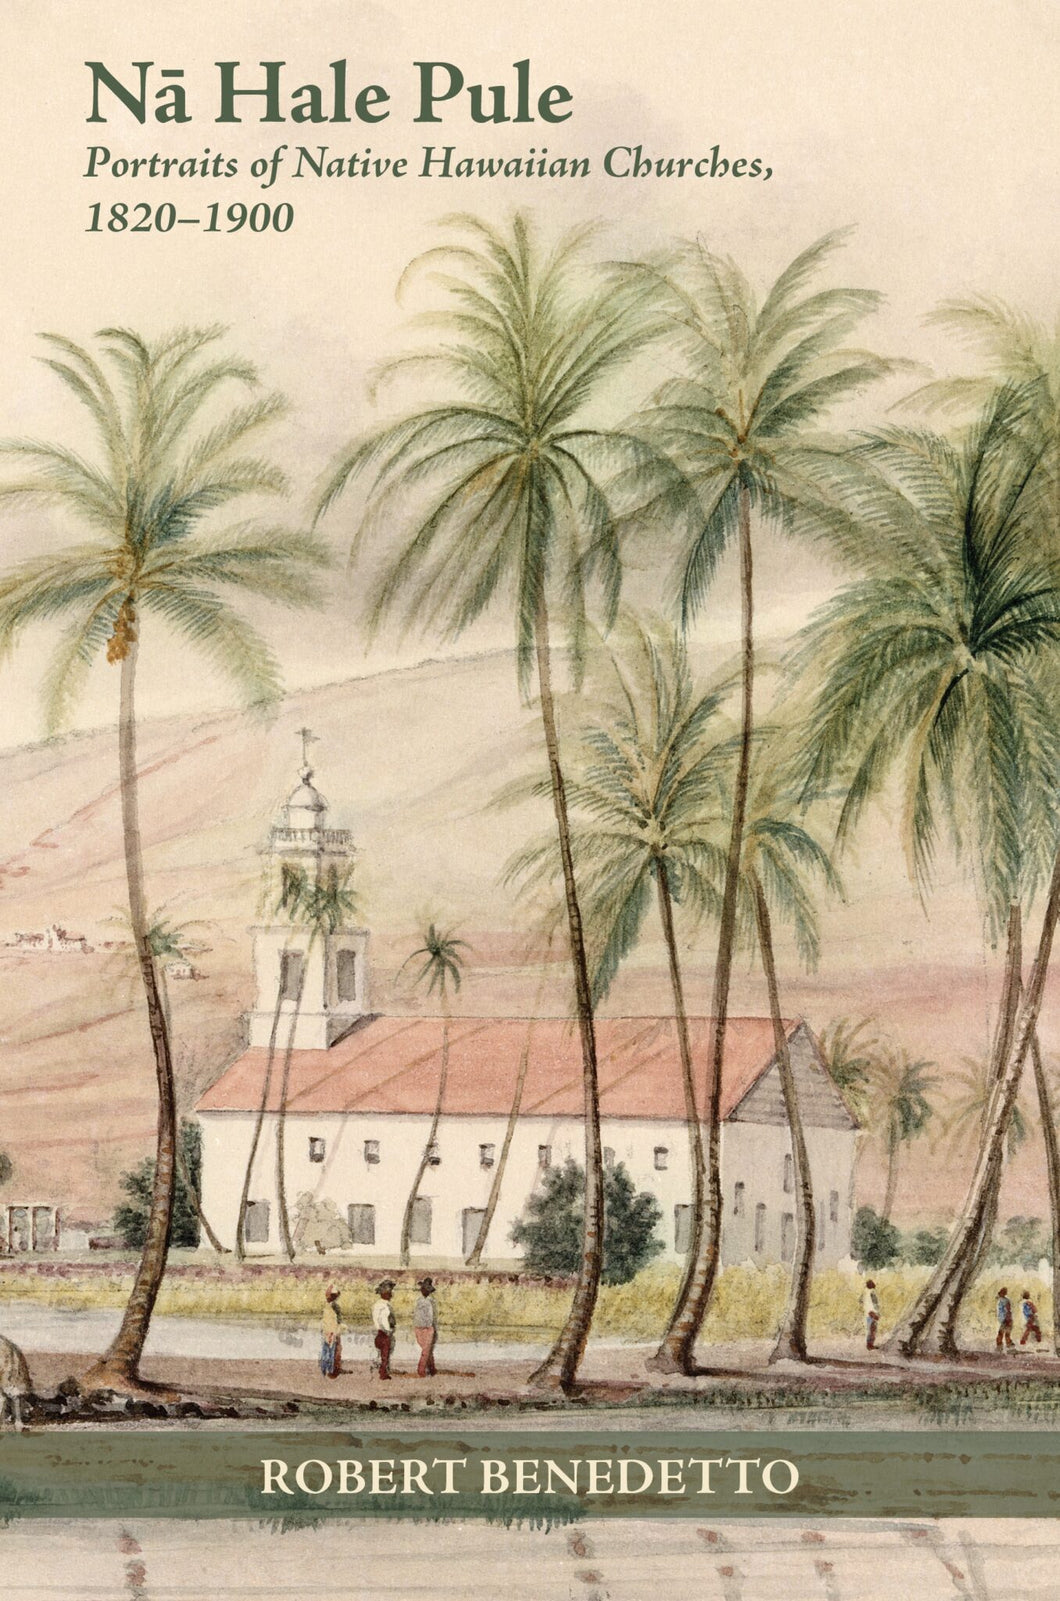 Nā Hale Pule: Portraits of Native Hawaiian Churches, 1820—1900